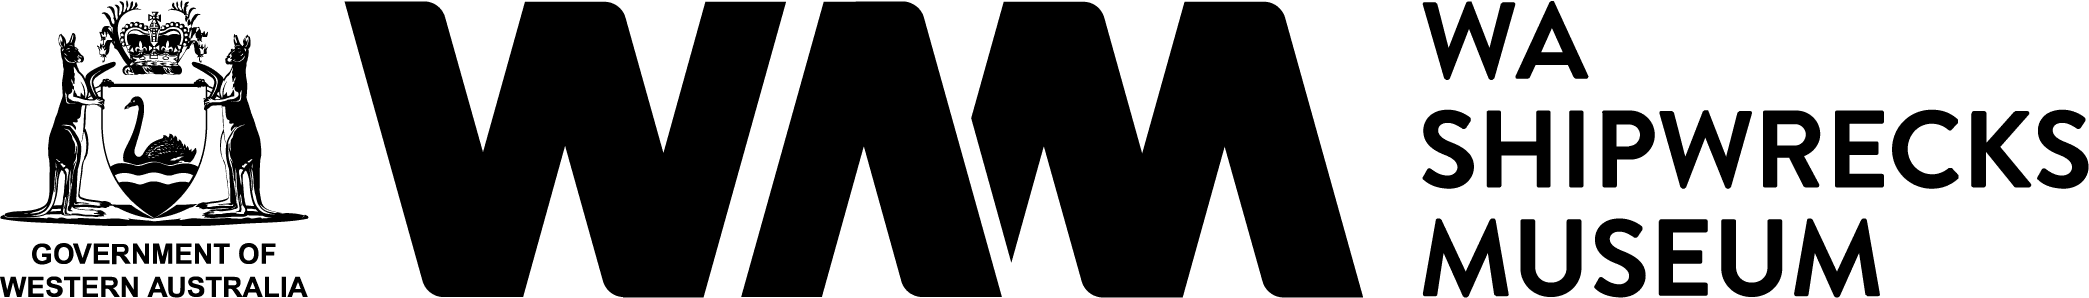 WA Shipwrecks Museum logo